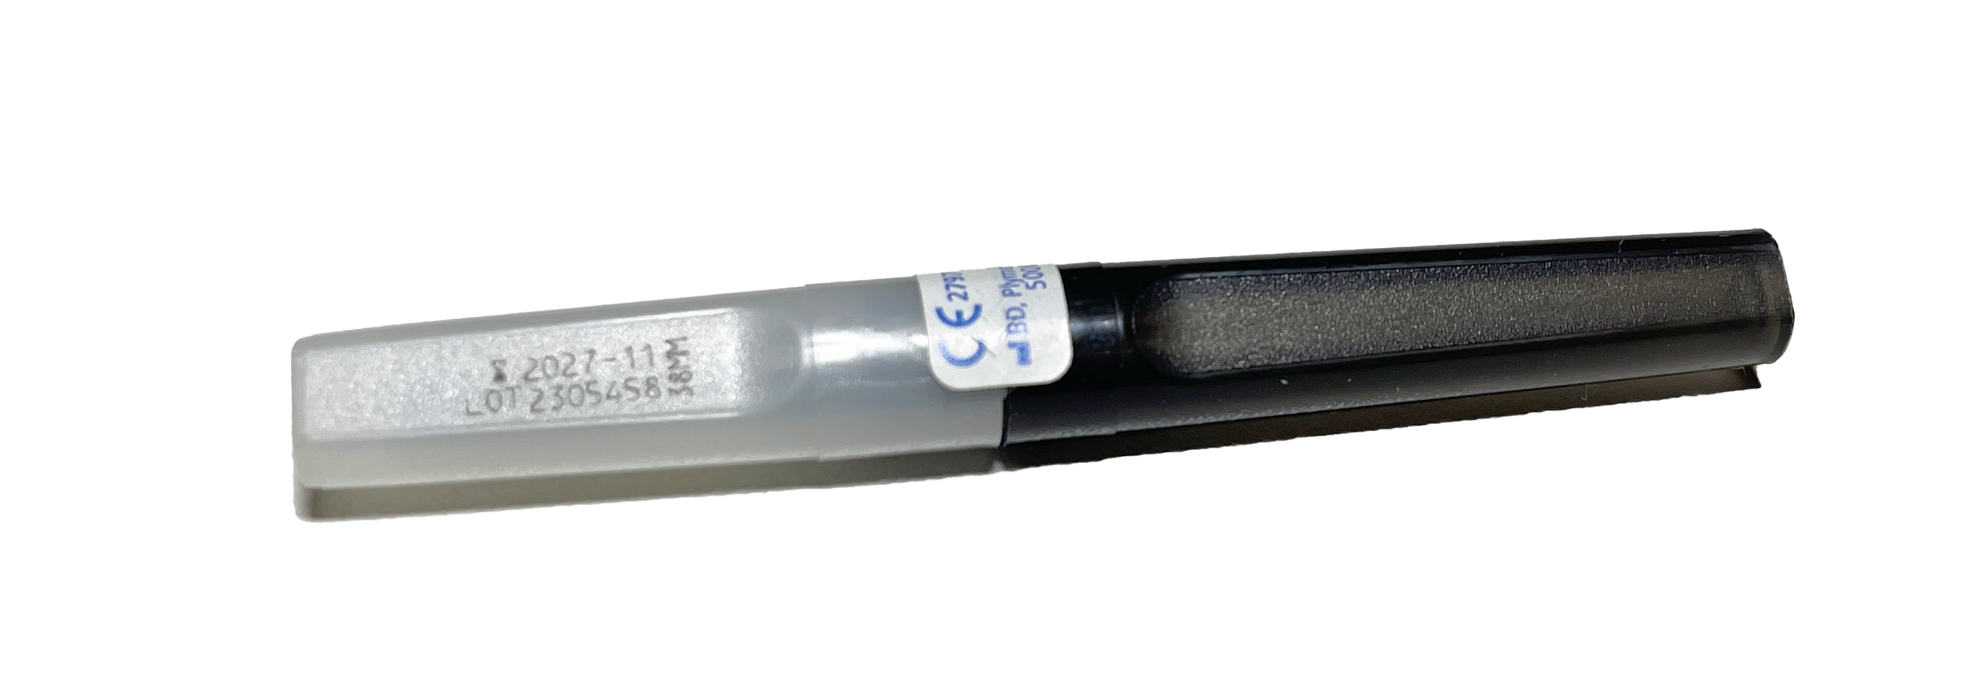 100 Aiguilles stériles BD VACUTAINER pour prélèvements multiples - Noires - 22G x 1.5" (0.7x38mm)